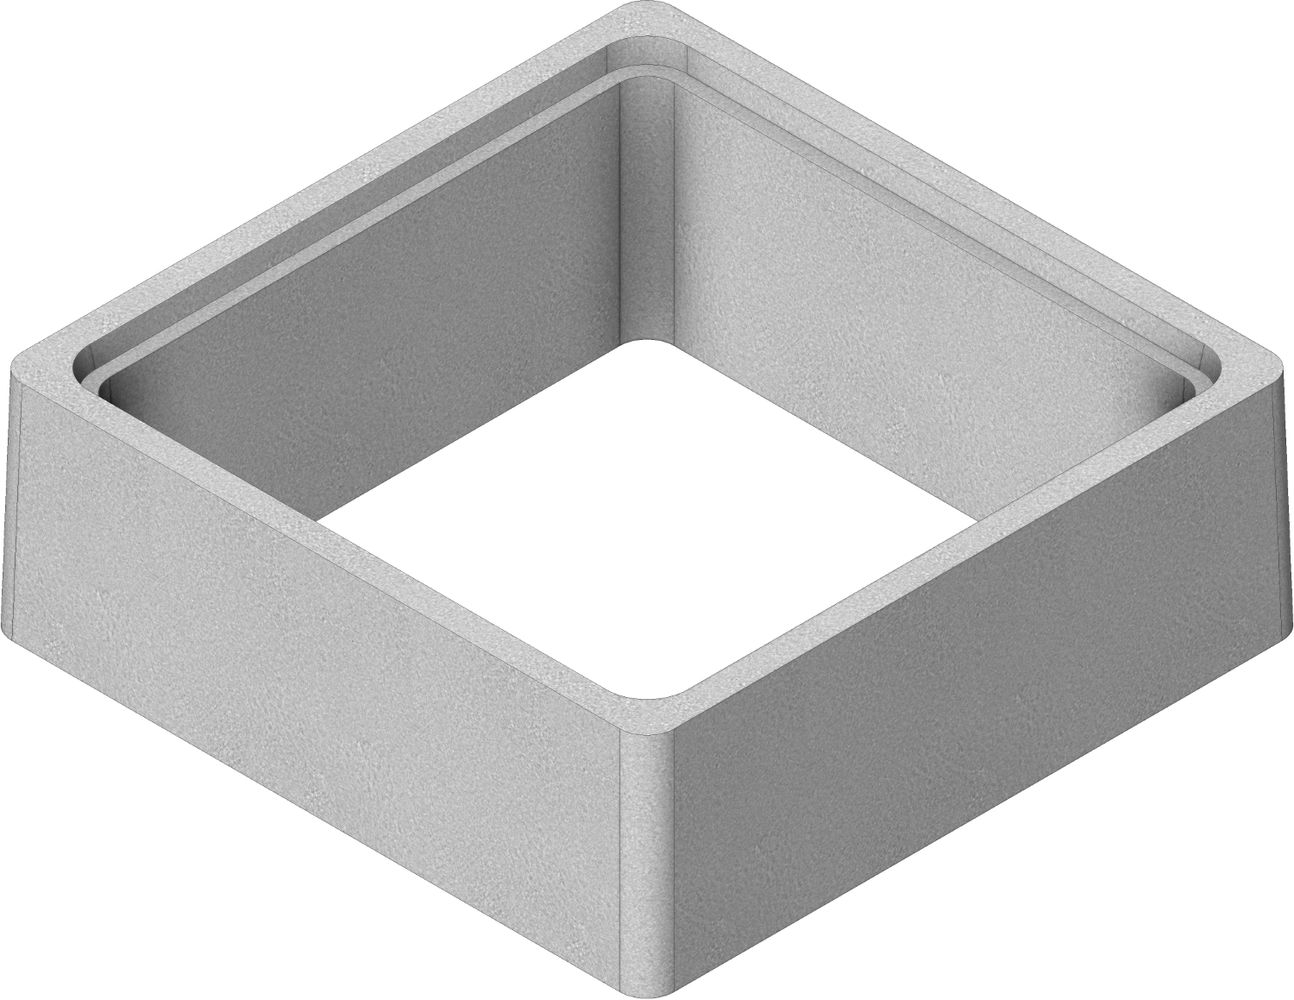 rehausse-beton-boite-branchement-bb60-600x600-h250-thebault-0